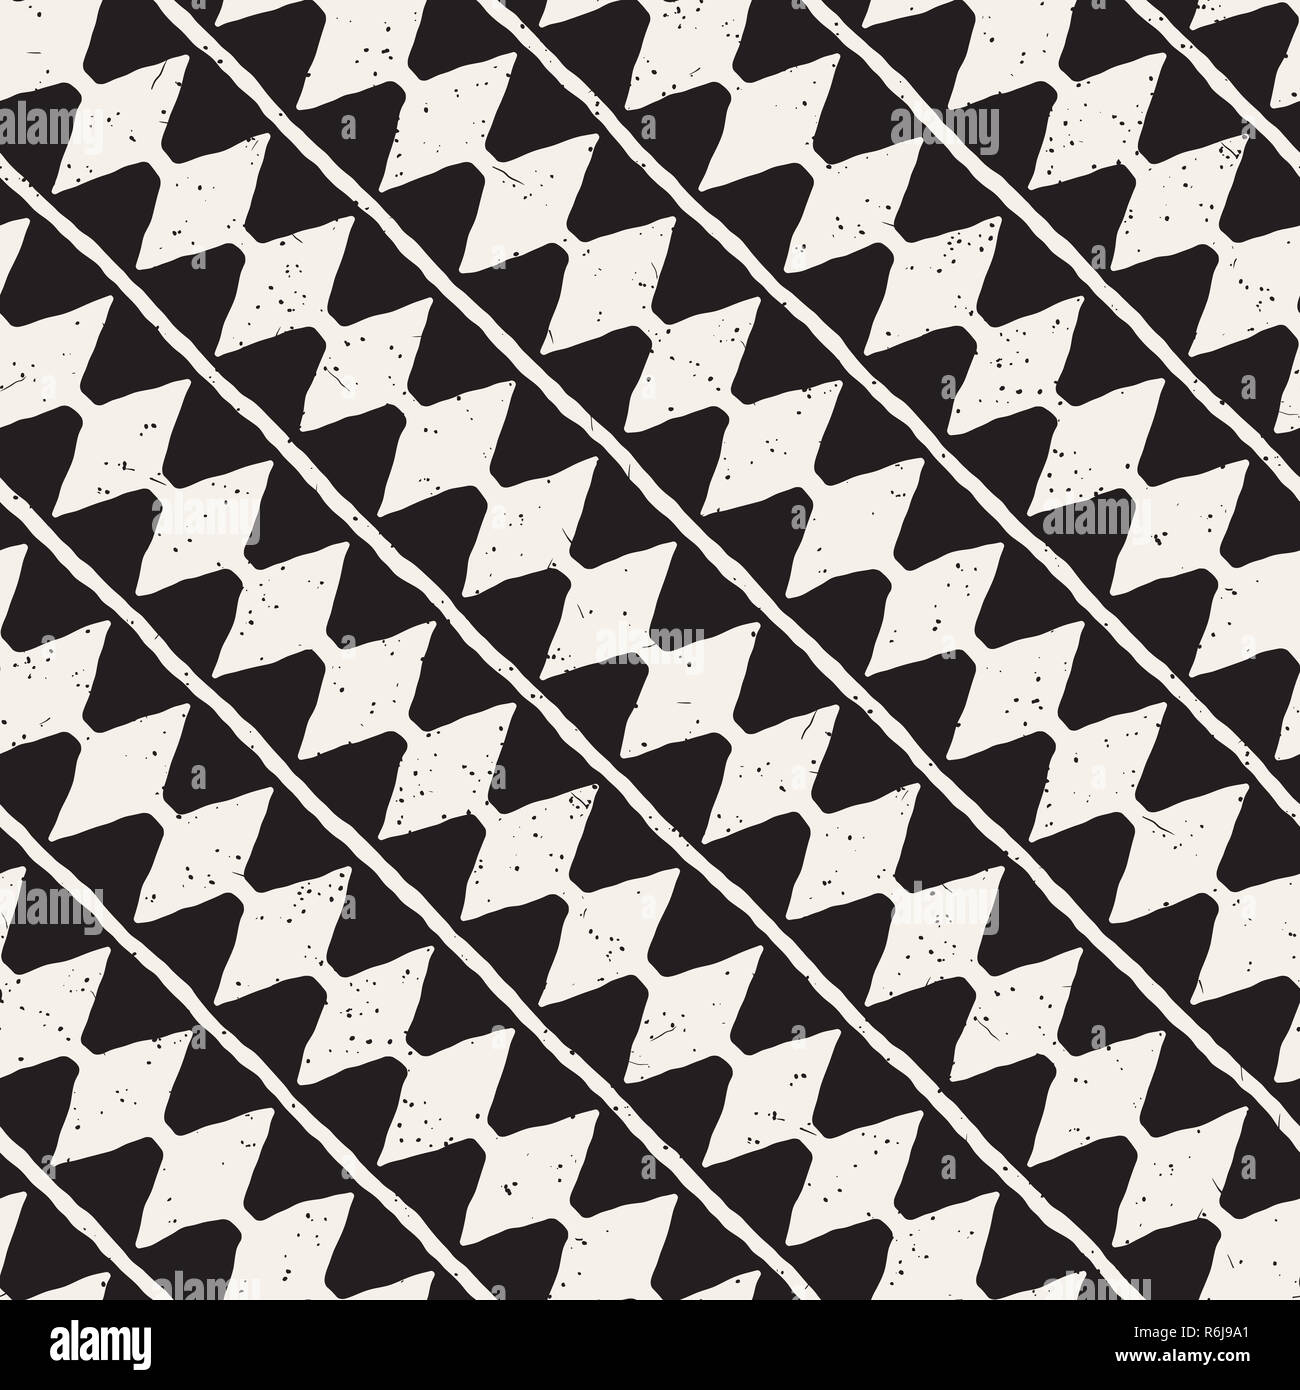 Hand abstract nahtlose Muster in Schwarz und Weiß gezeichnet. Retro grunge Freehand gezackten Linien Textur. Stockfoto